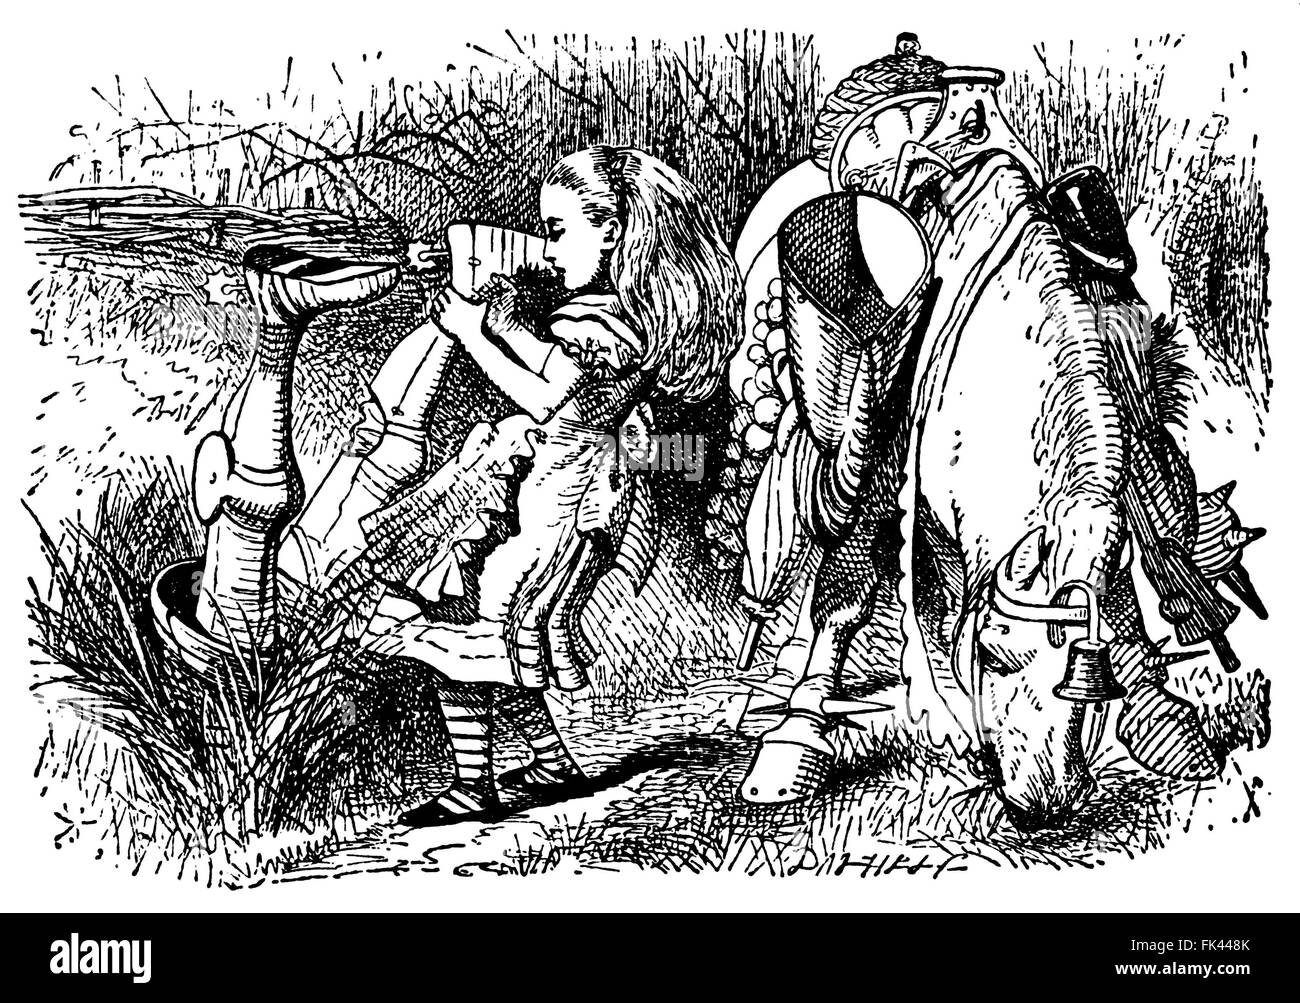 Alice in einem Wald mit weißer Ritter kopfüber neben ihr, vom Pferd gefallen.  Alice Through the Looking Glass. Stockfoto